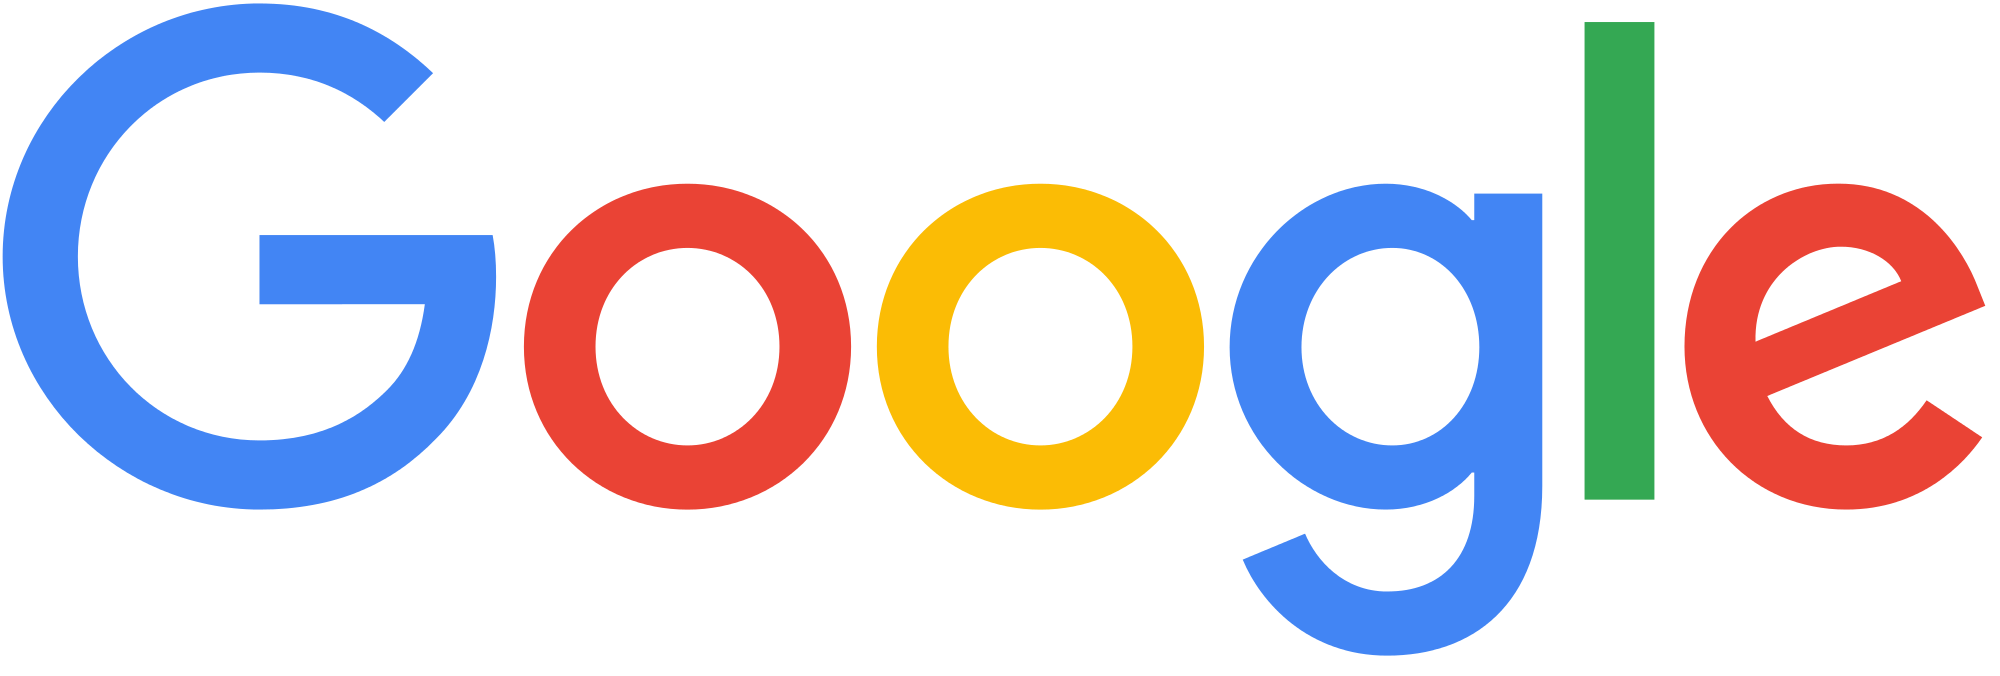 Google wordmark logo